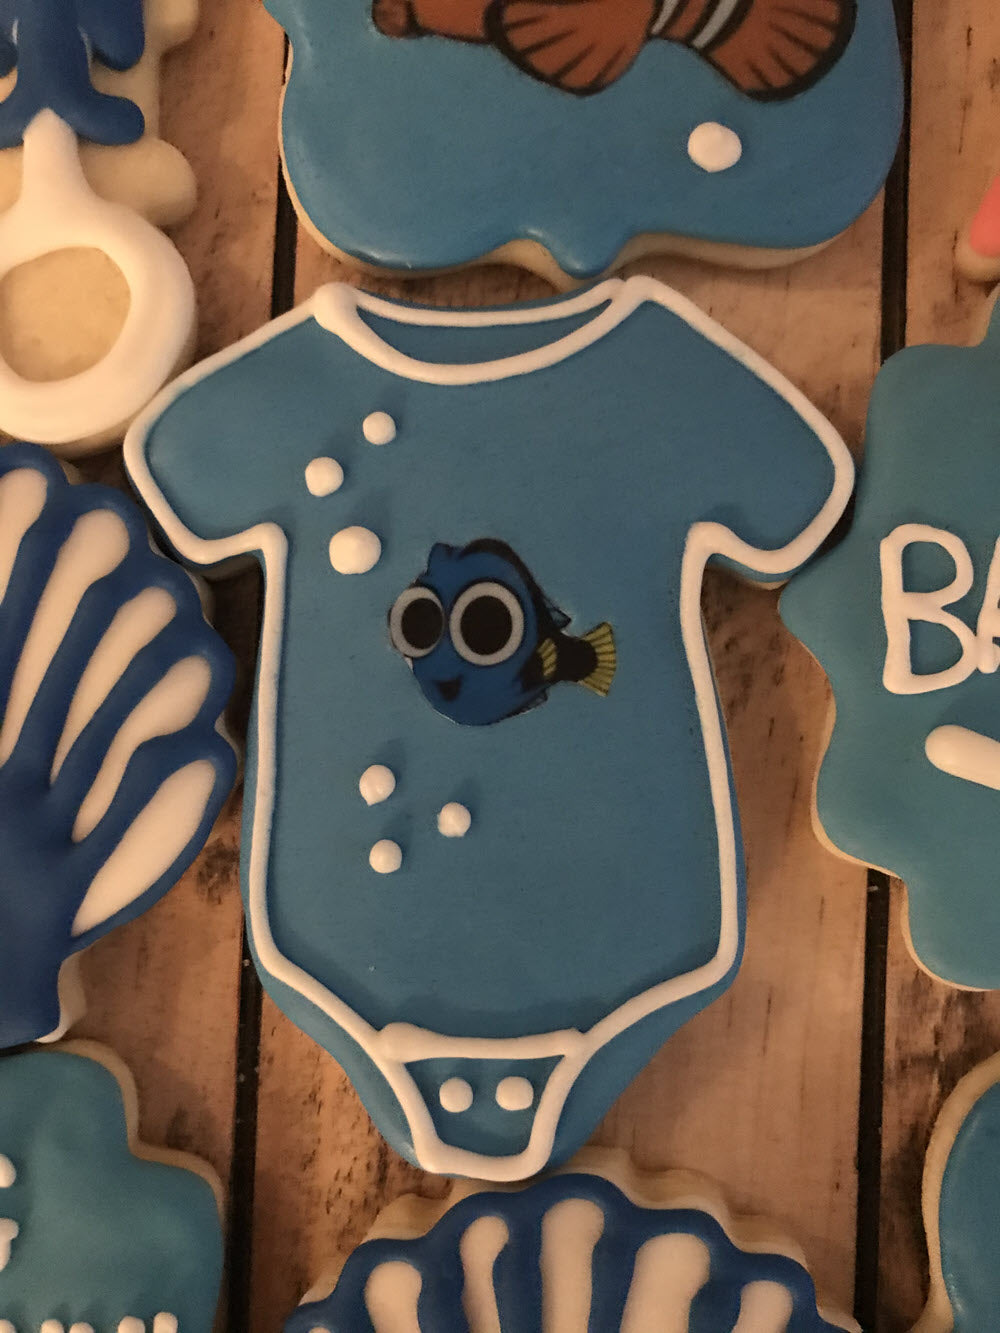 Finding Nemo Baby Shower Cookies Set